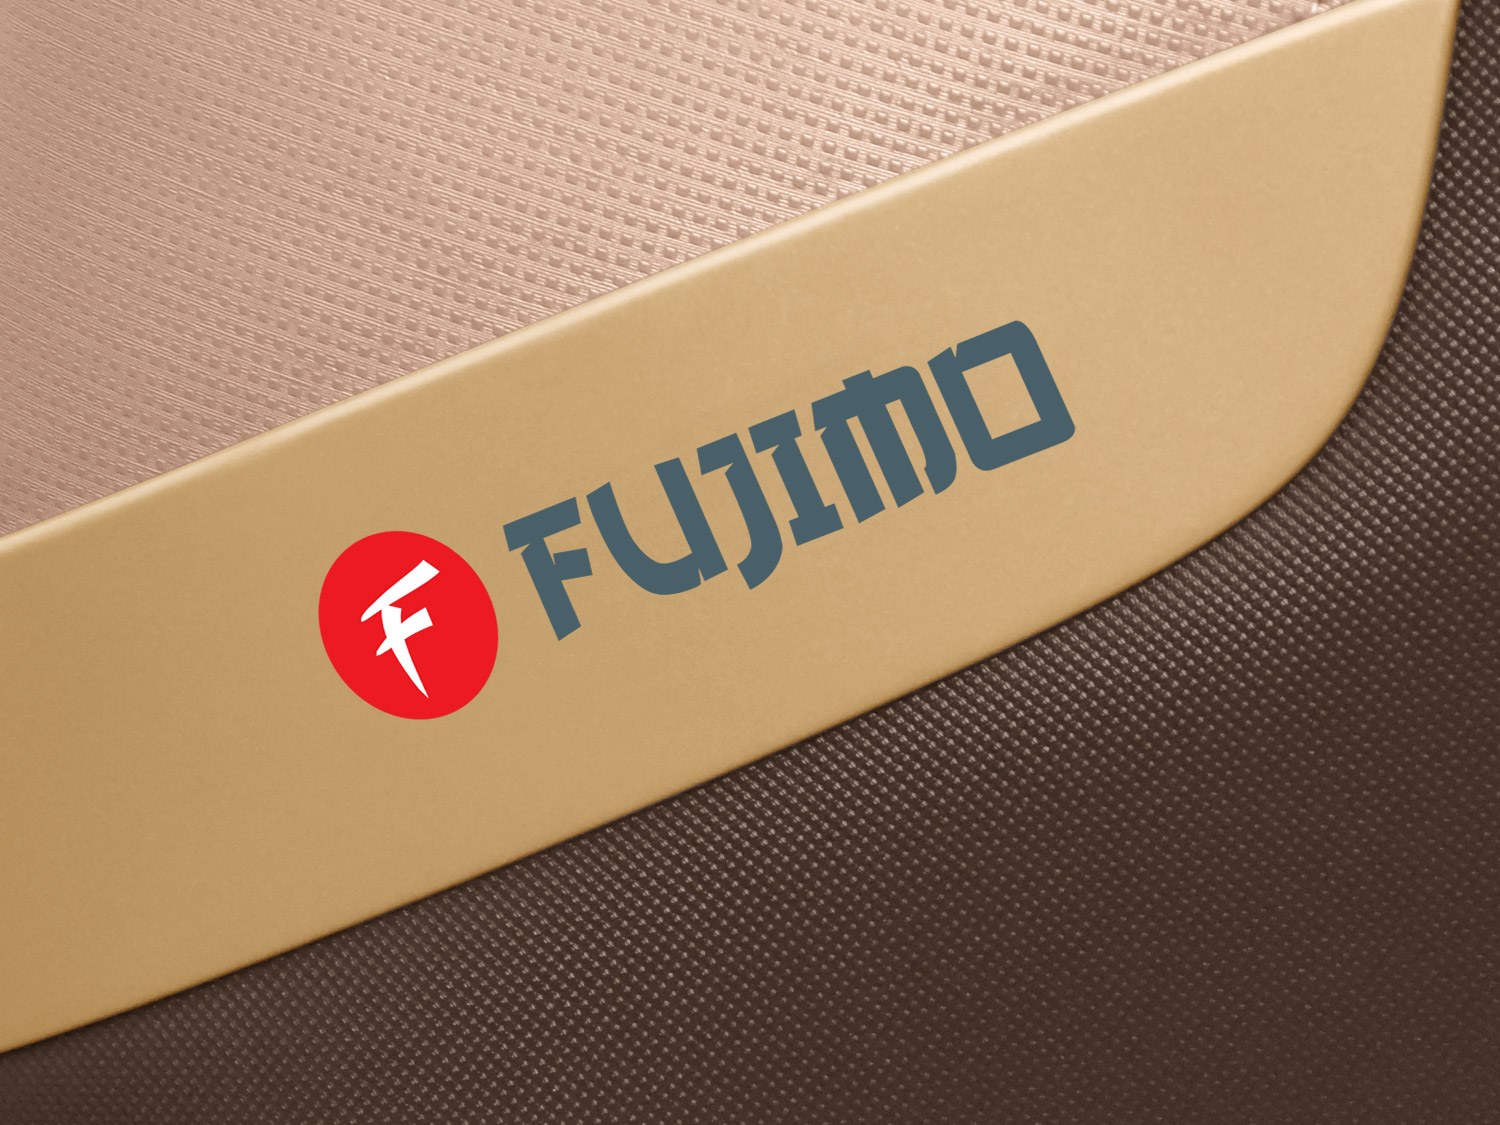 Массажное кресло FUJIMO F633 Espresso